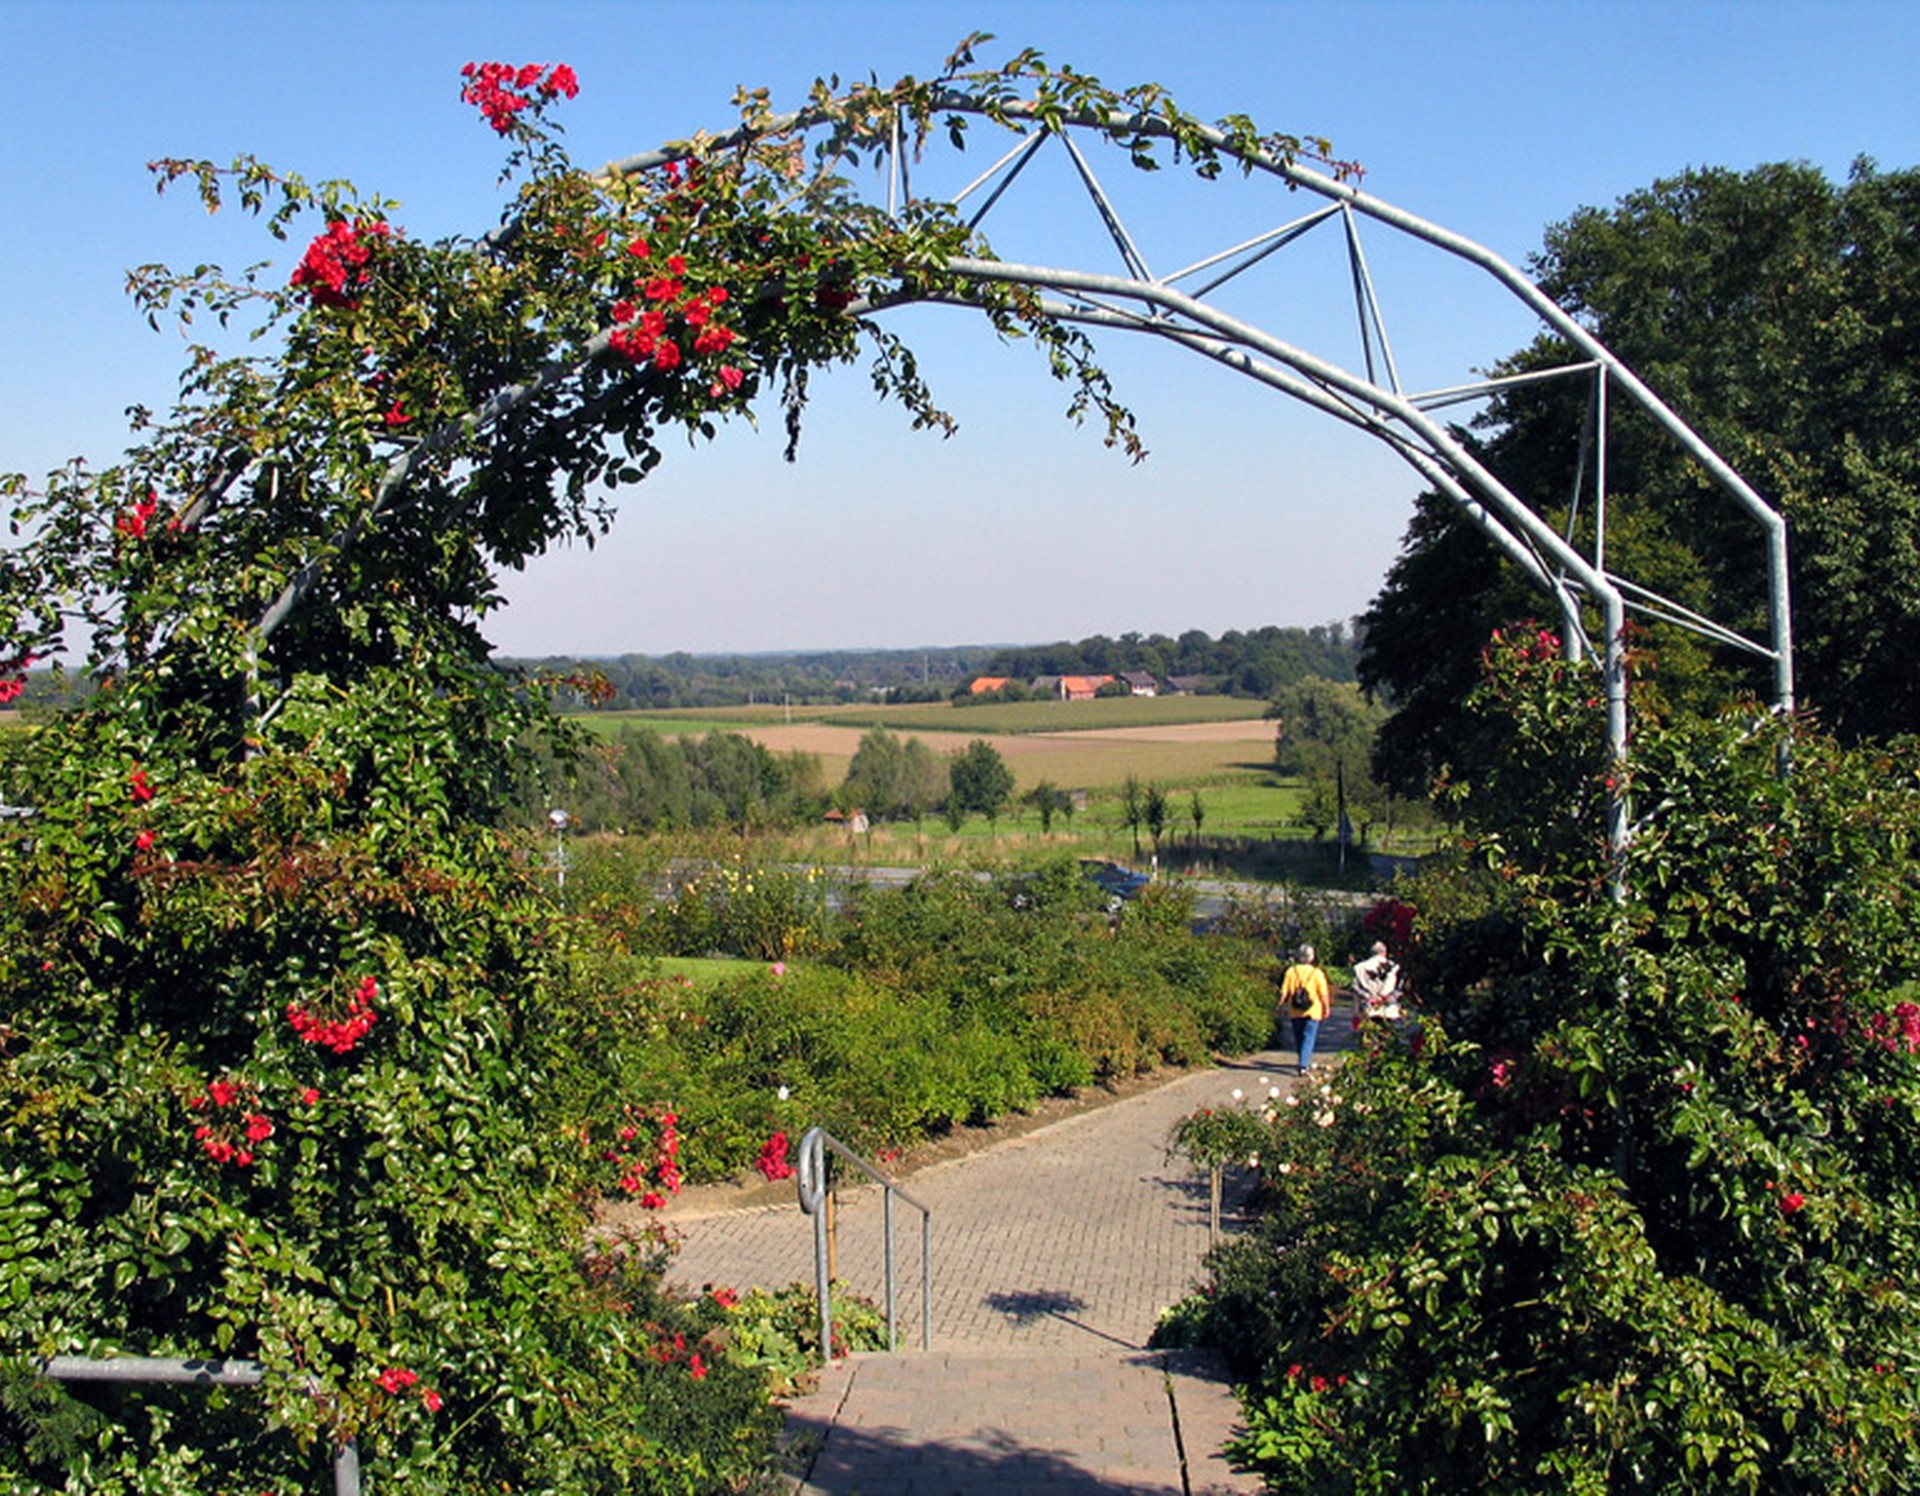 Ein Rosenbogen im Rosengarten Seppenrade. Dahinter sieht man einen Teil des Rosengartens sowie die umliegende Landschaft.